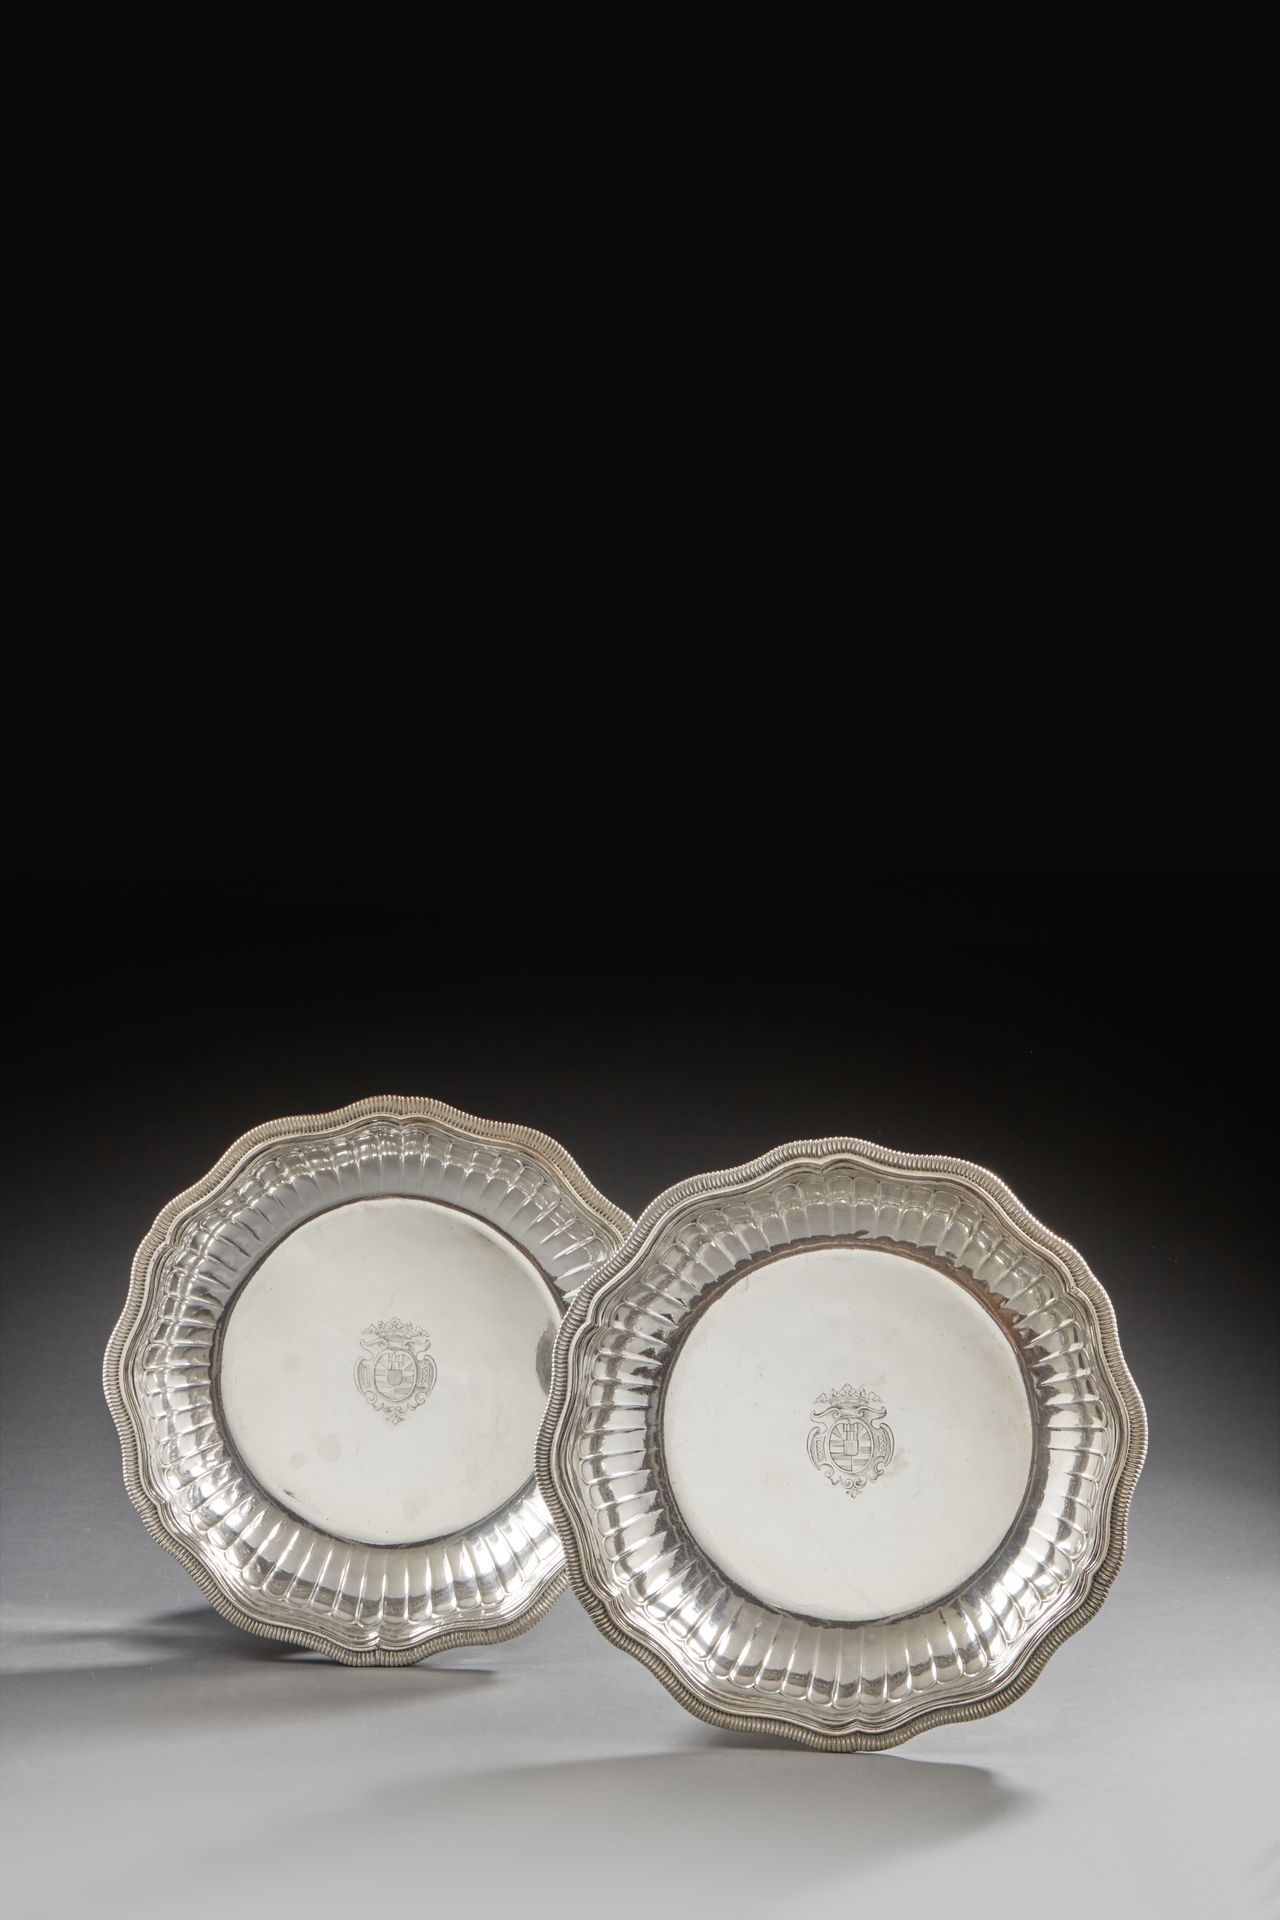 Null PARÍS 1727 - 1728
Un par de cuencos de plata, modelo polilobulado moldeado &hellip;